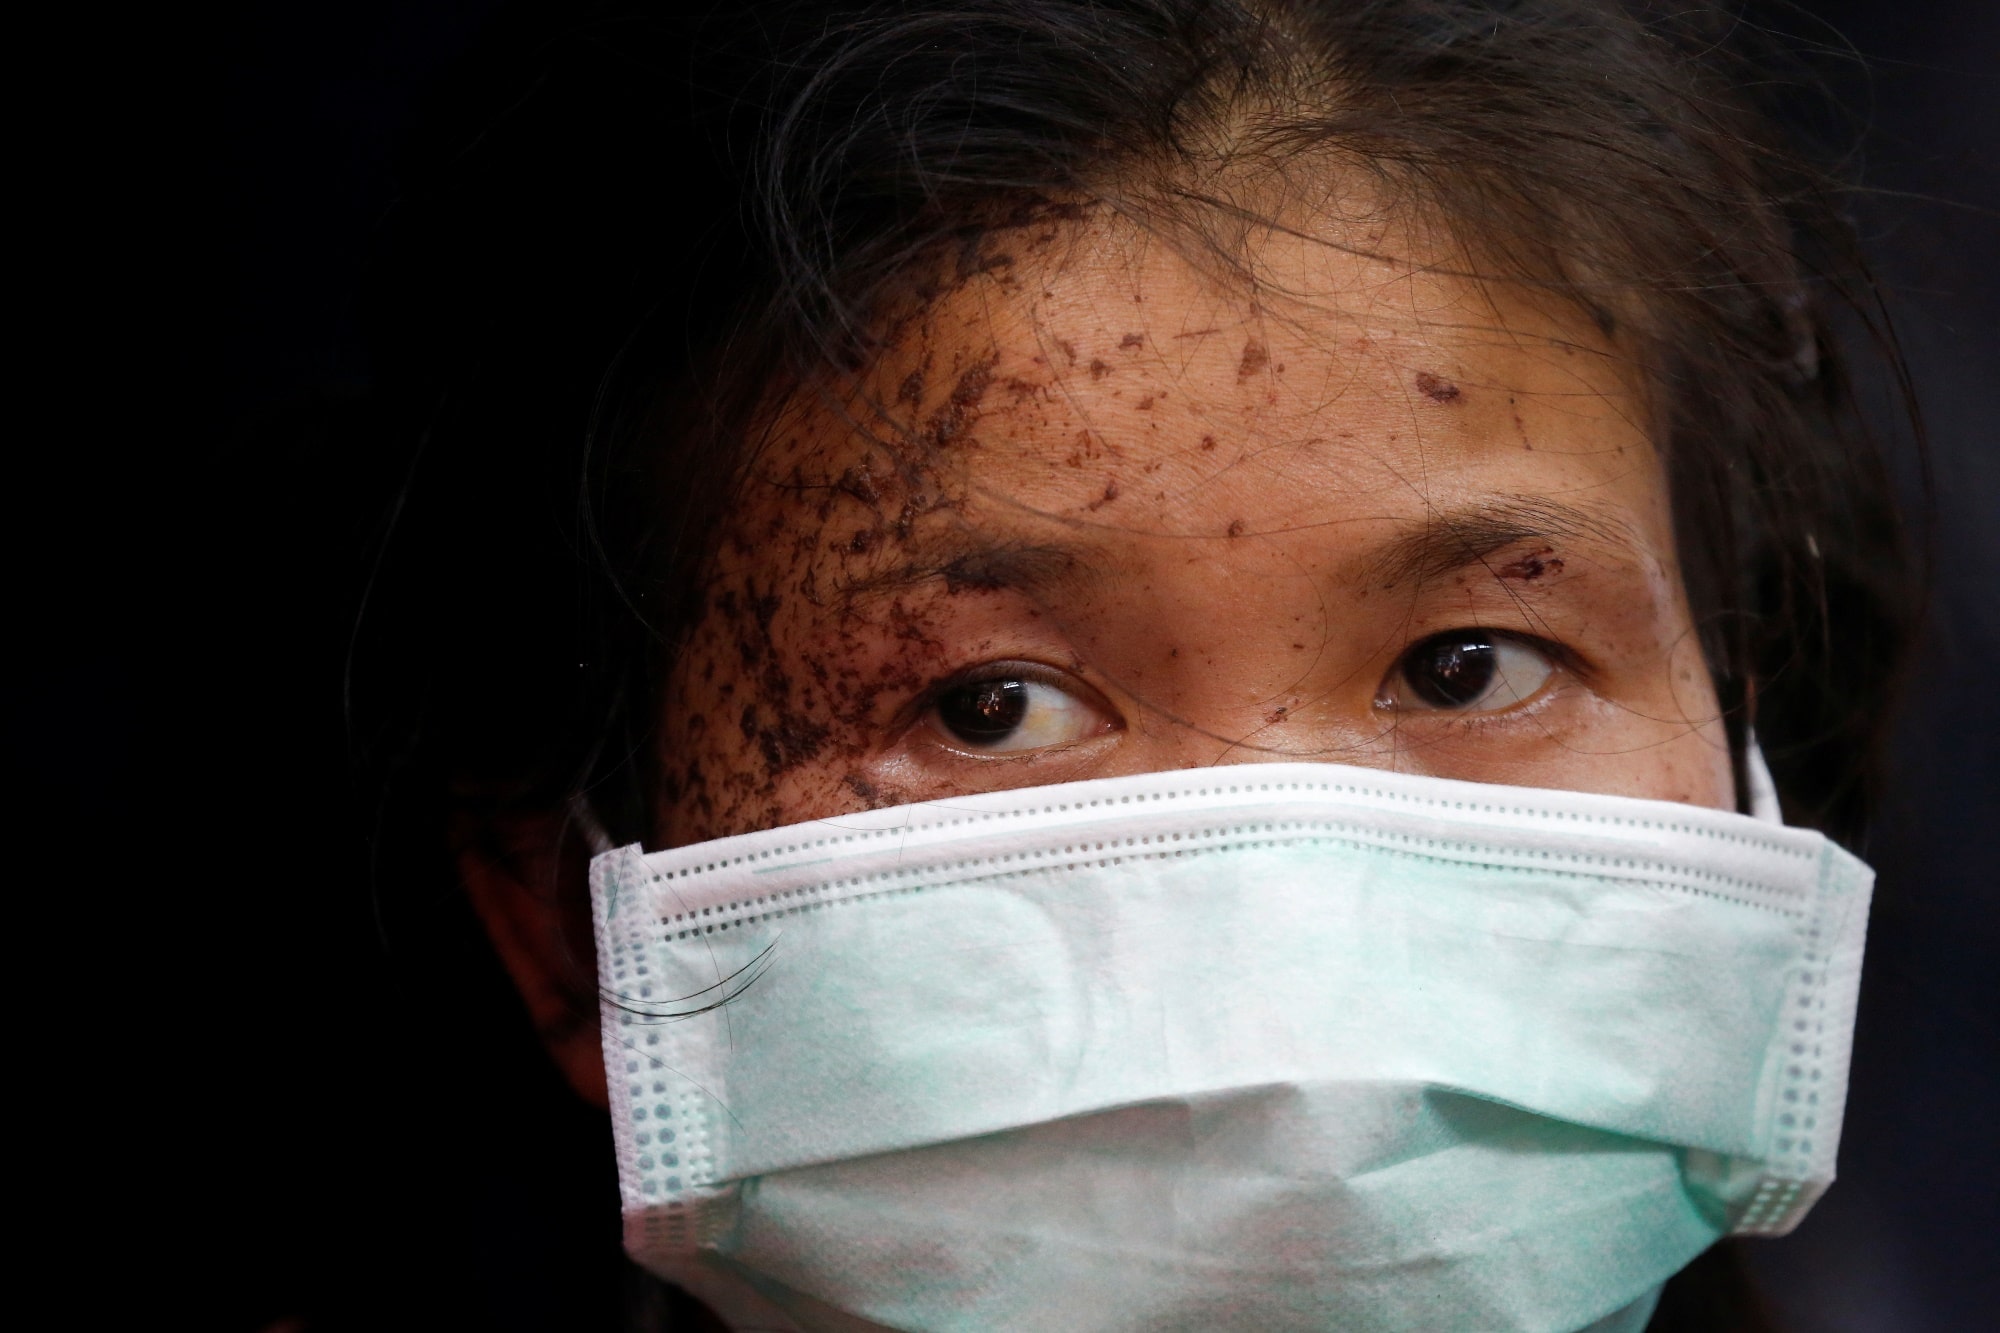 Zraněná osoba z Myanmaru vyhledala pomoc ve vesnici na hranicích s Thajskem